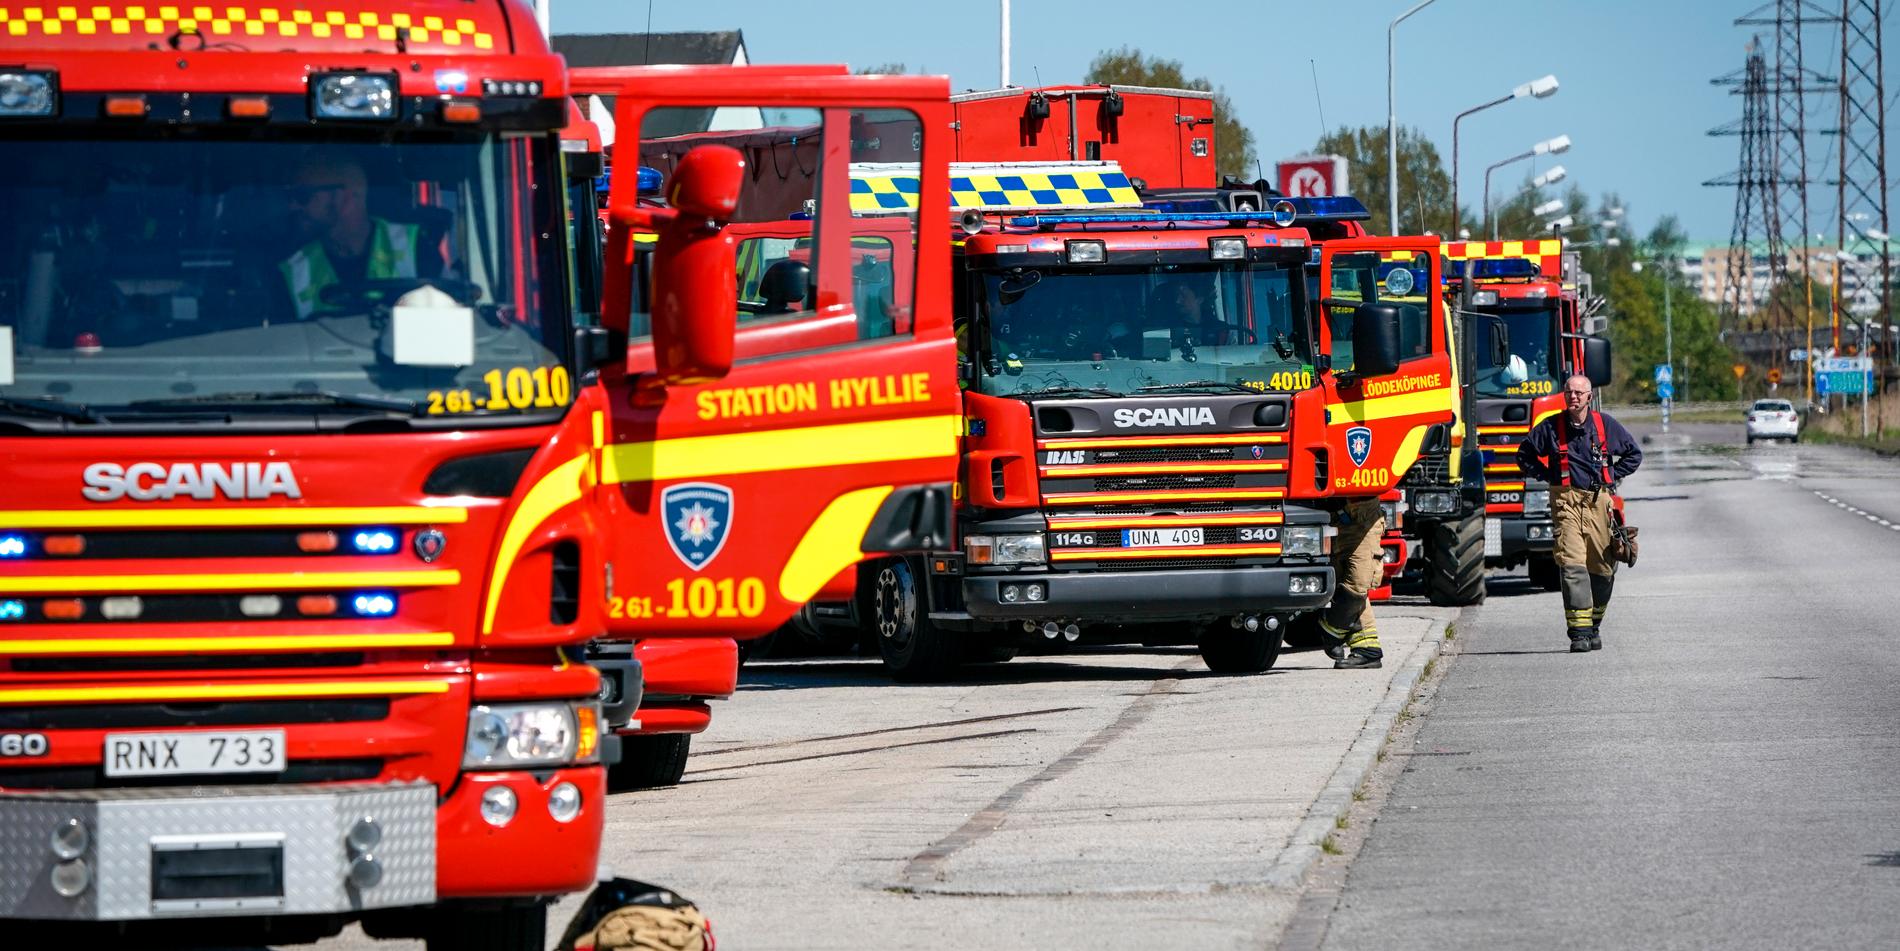 Ett 20-tal fordon från räddningstjänst i kranskommuner runt Malmö deltog, bland annat Lund, Löddeköpinge, Staffanstorp, Genarp och Burlöv.